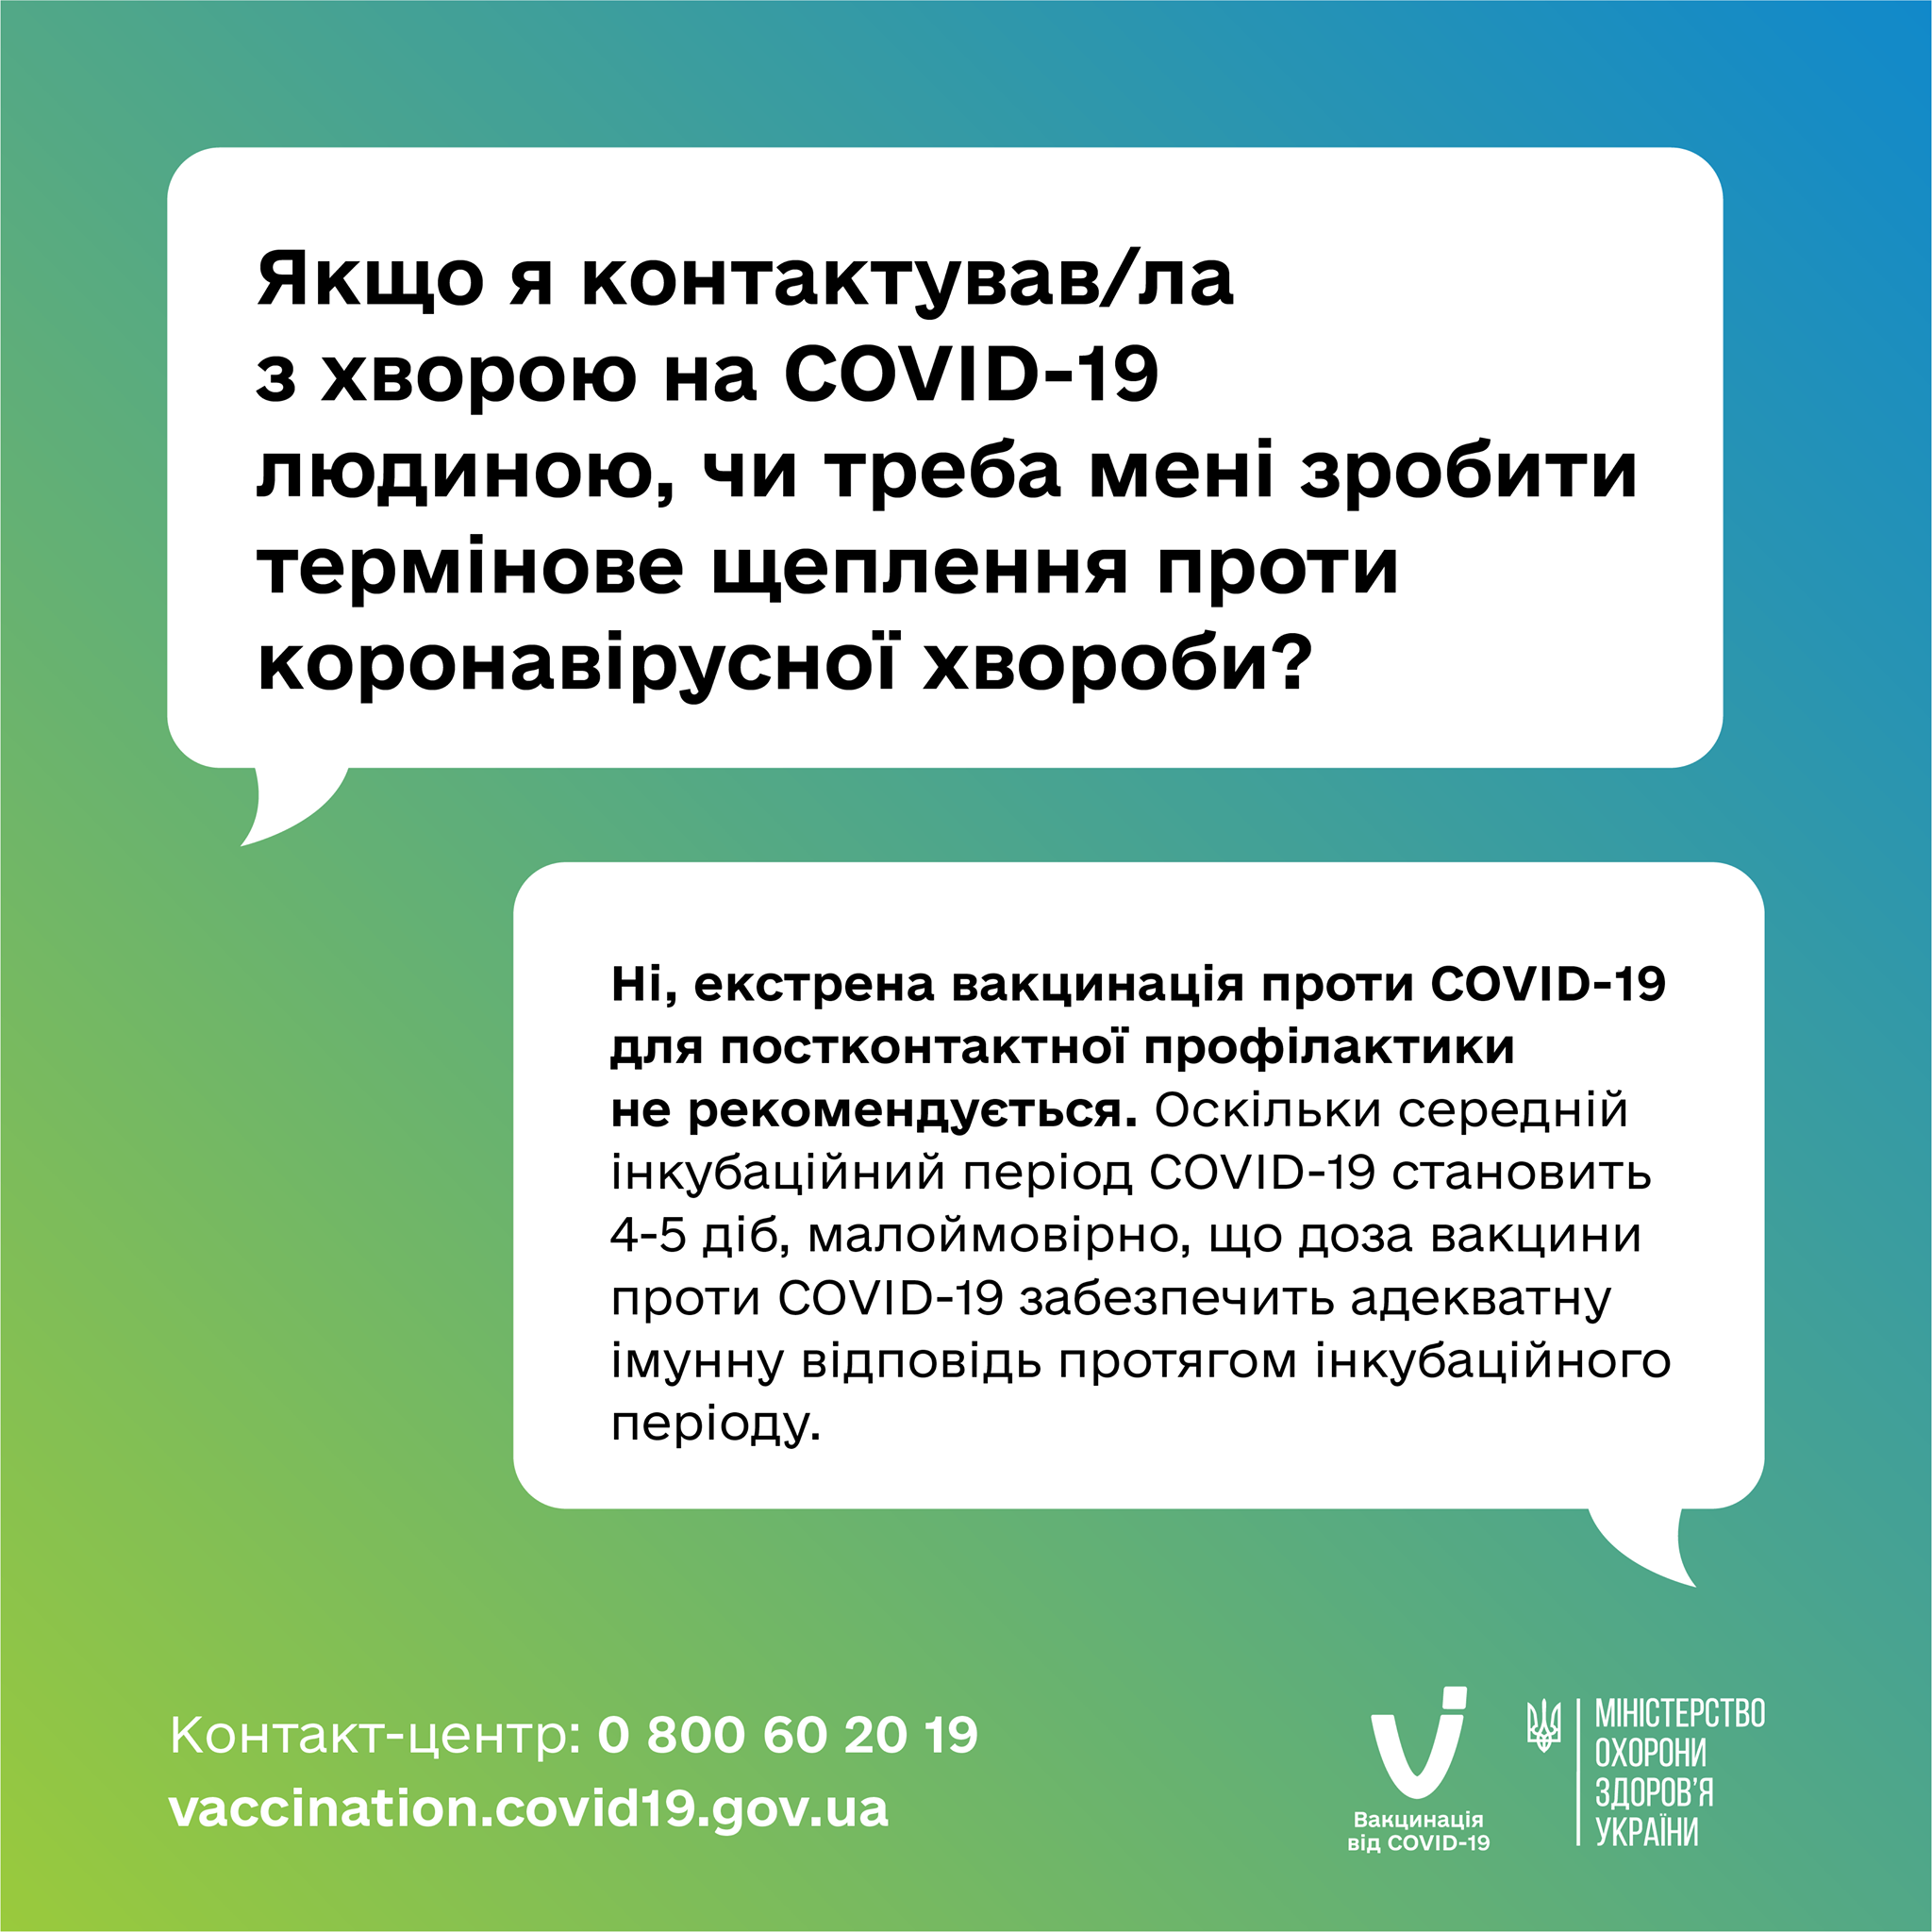 надо ли делать прививку после контакта с зараженным COVID-19